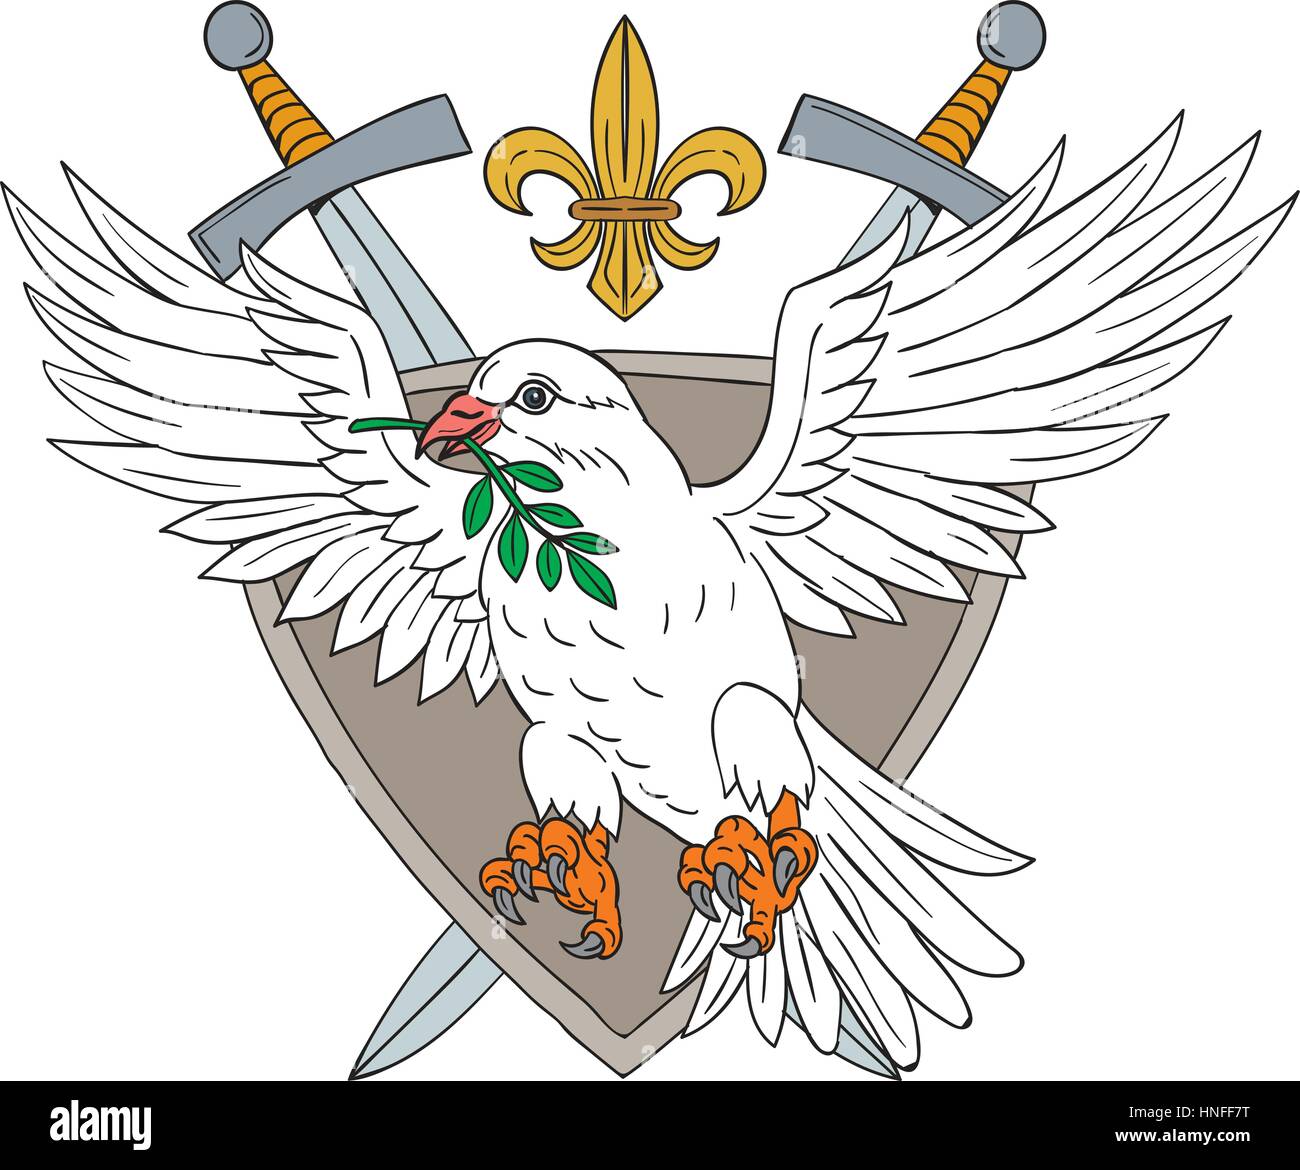 Illustrarion style croquis dessin d'une colombe avec la feuille d'olivier dans son bec situé à l''intérieur de la protection à l'épée et la fleur de lis dans l'arrière-plan. Illustration de Vecteur